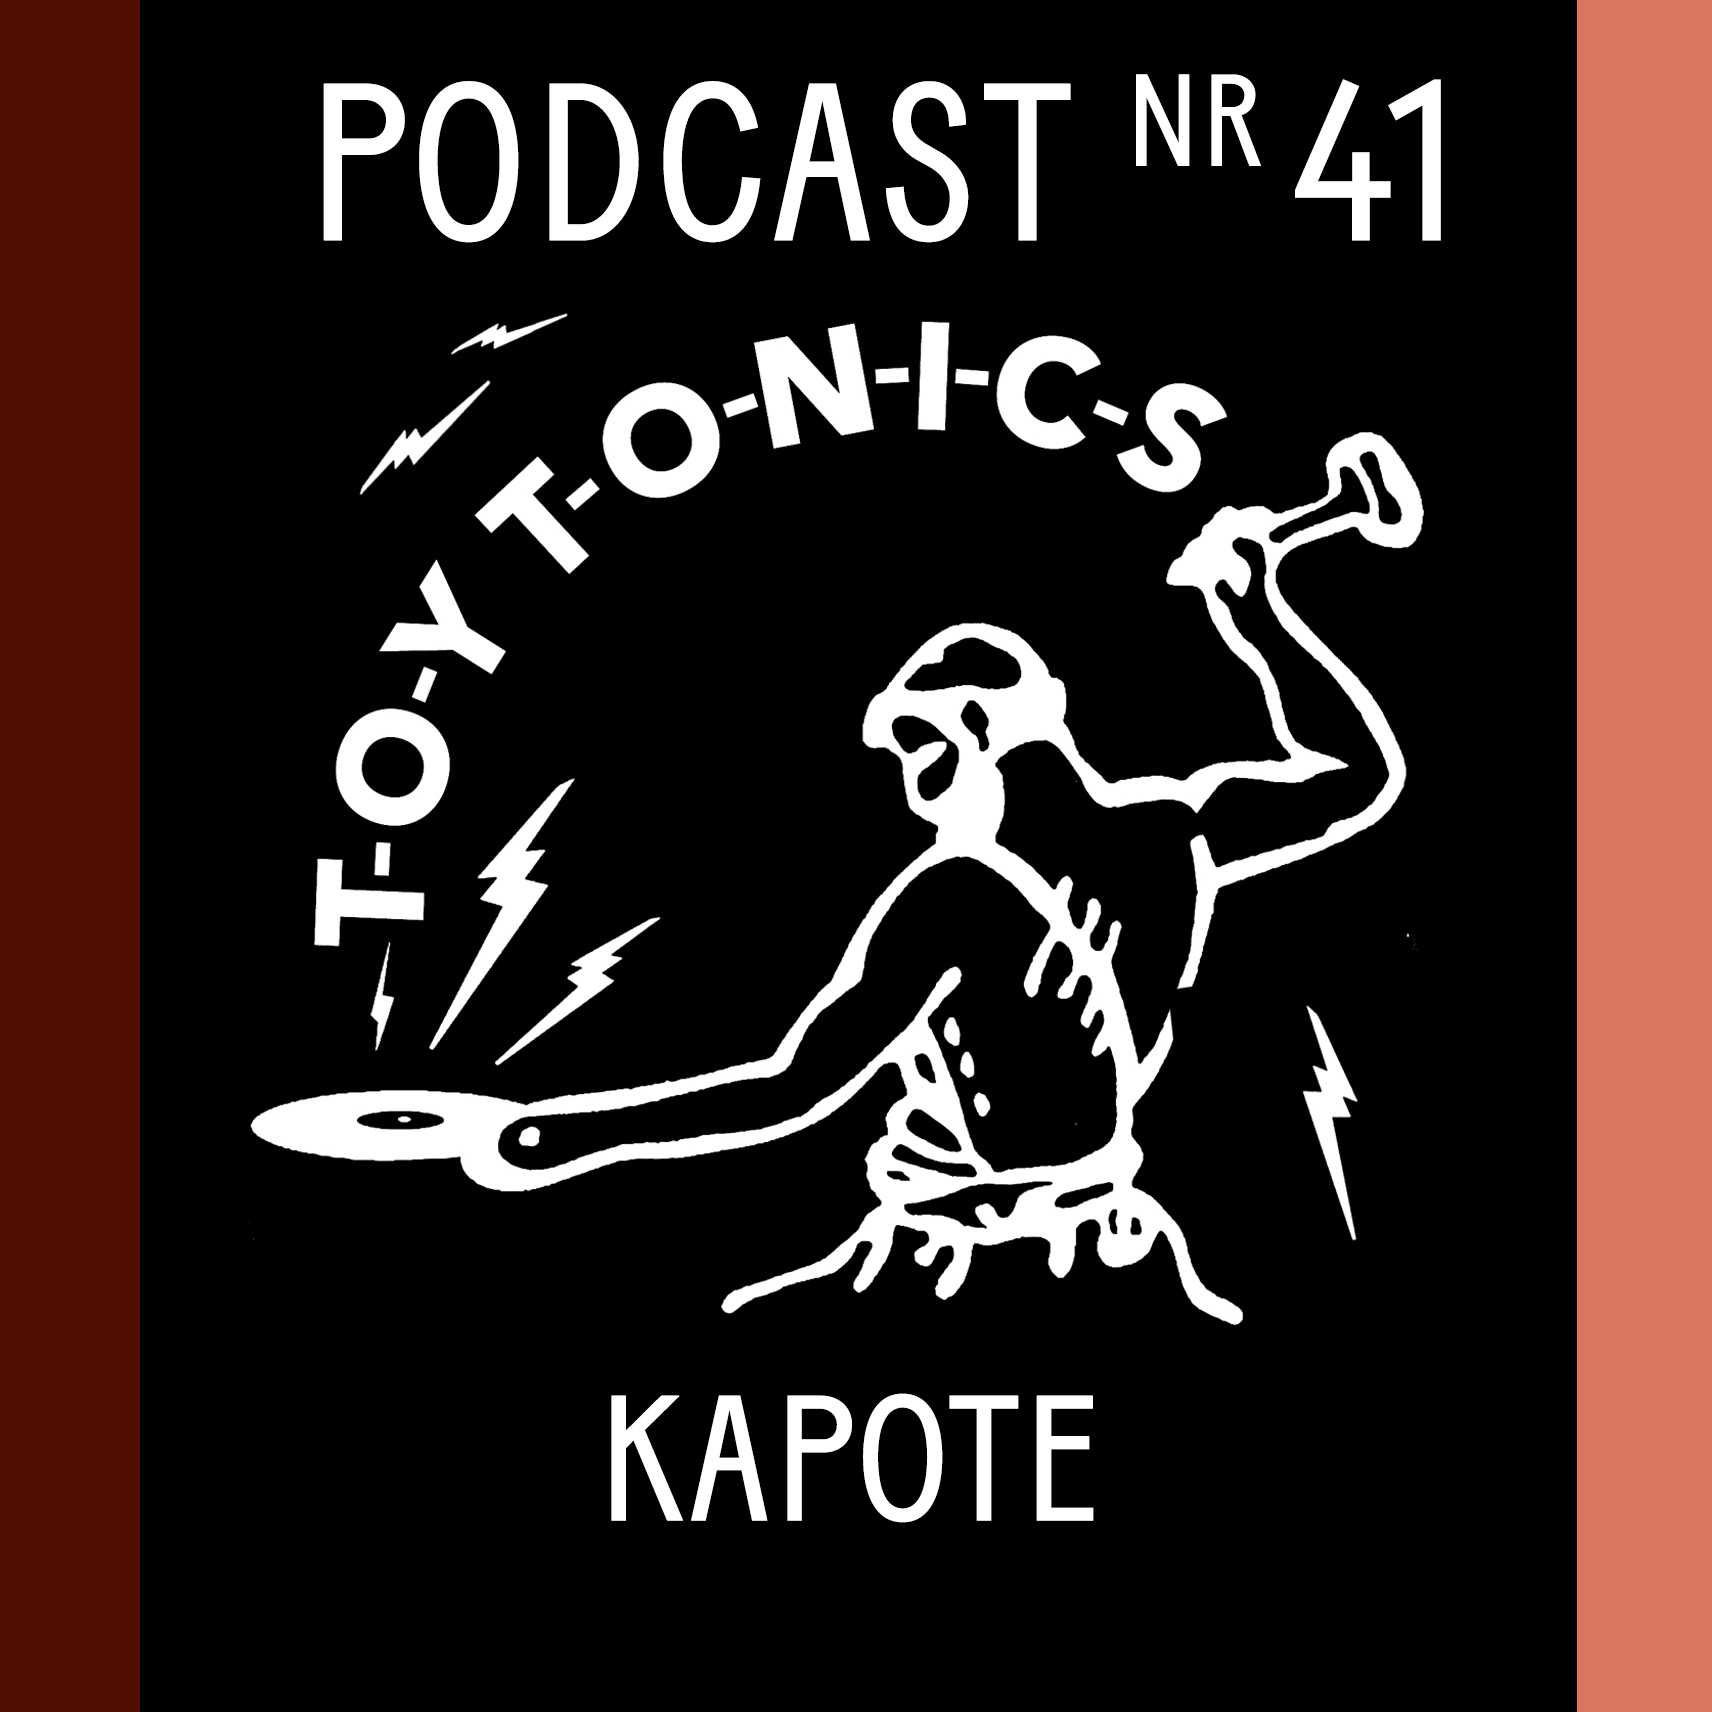 PODCAST NR 41 - Kapote (Live recorded DJ Set @ Toy Tonics Jam, London)